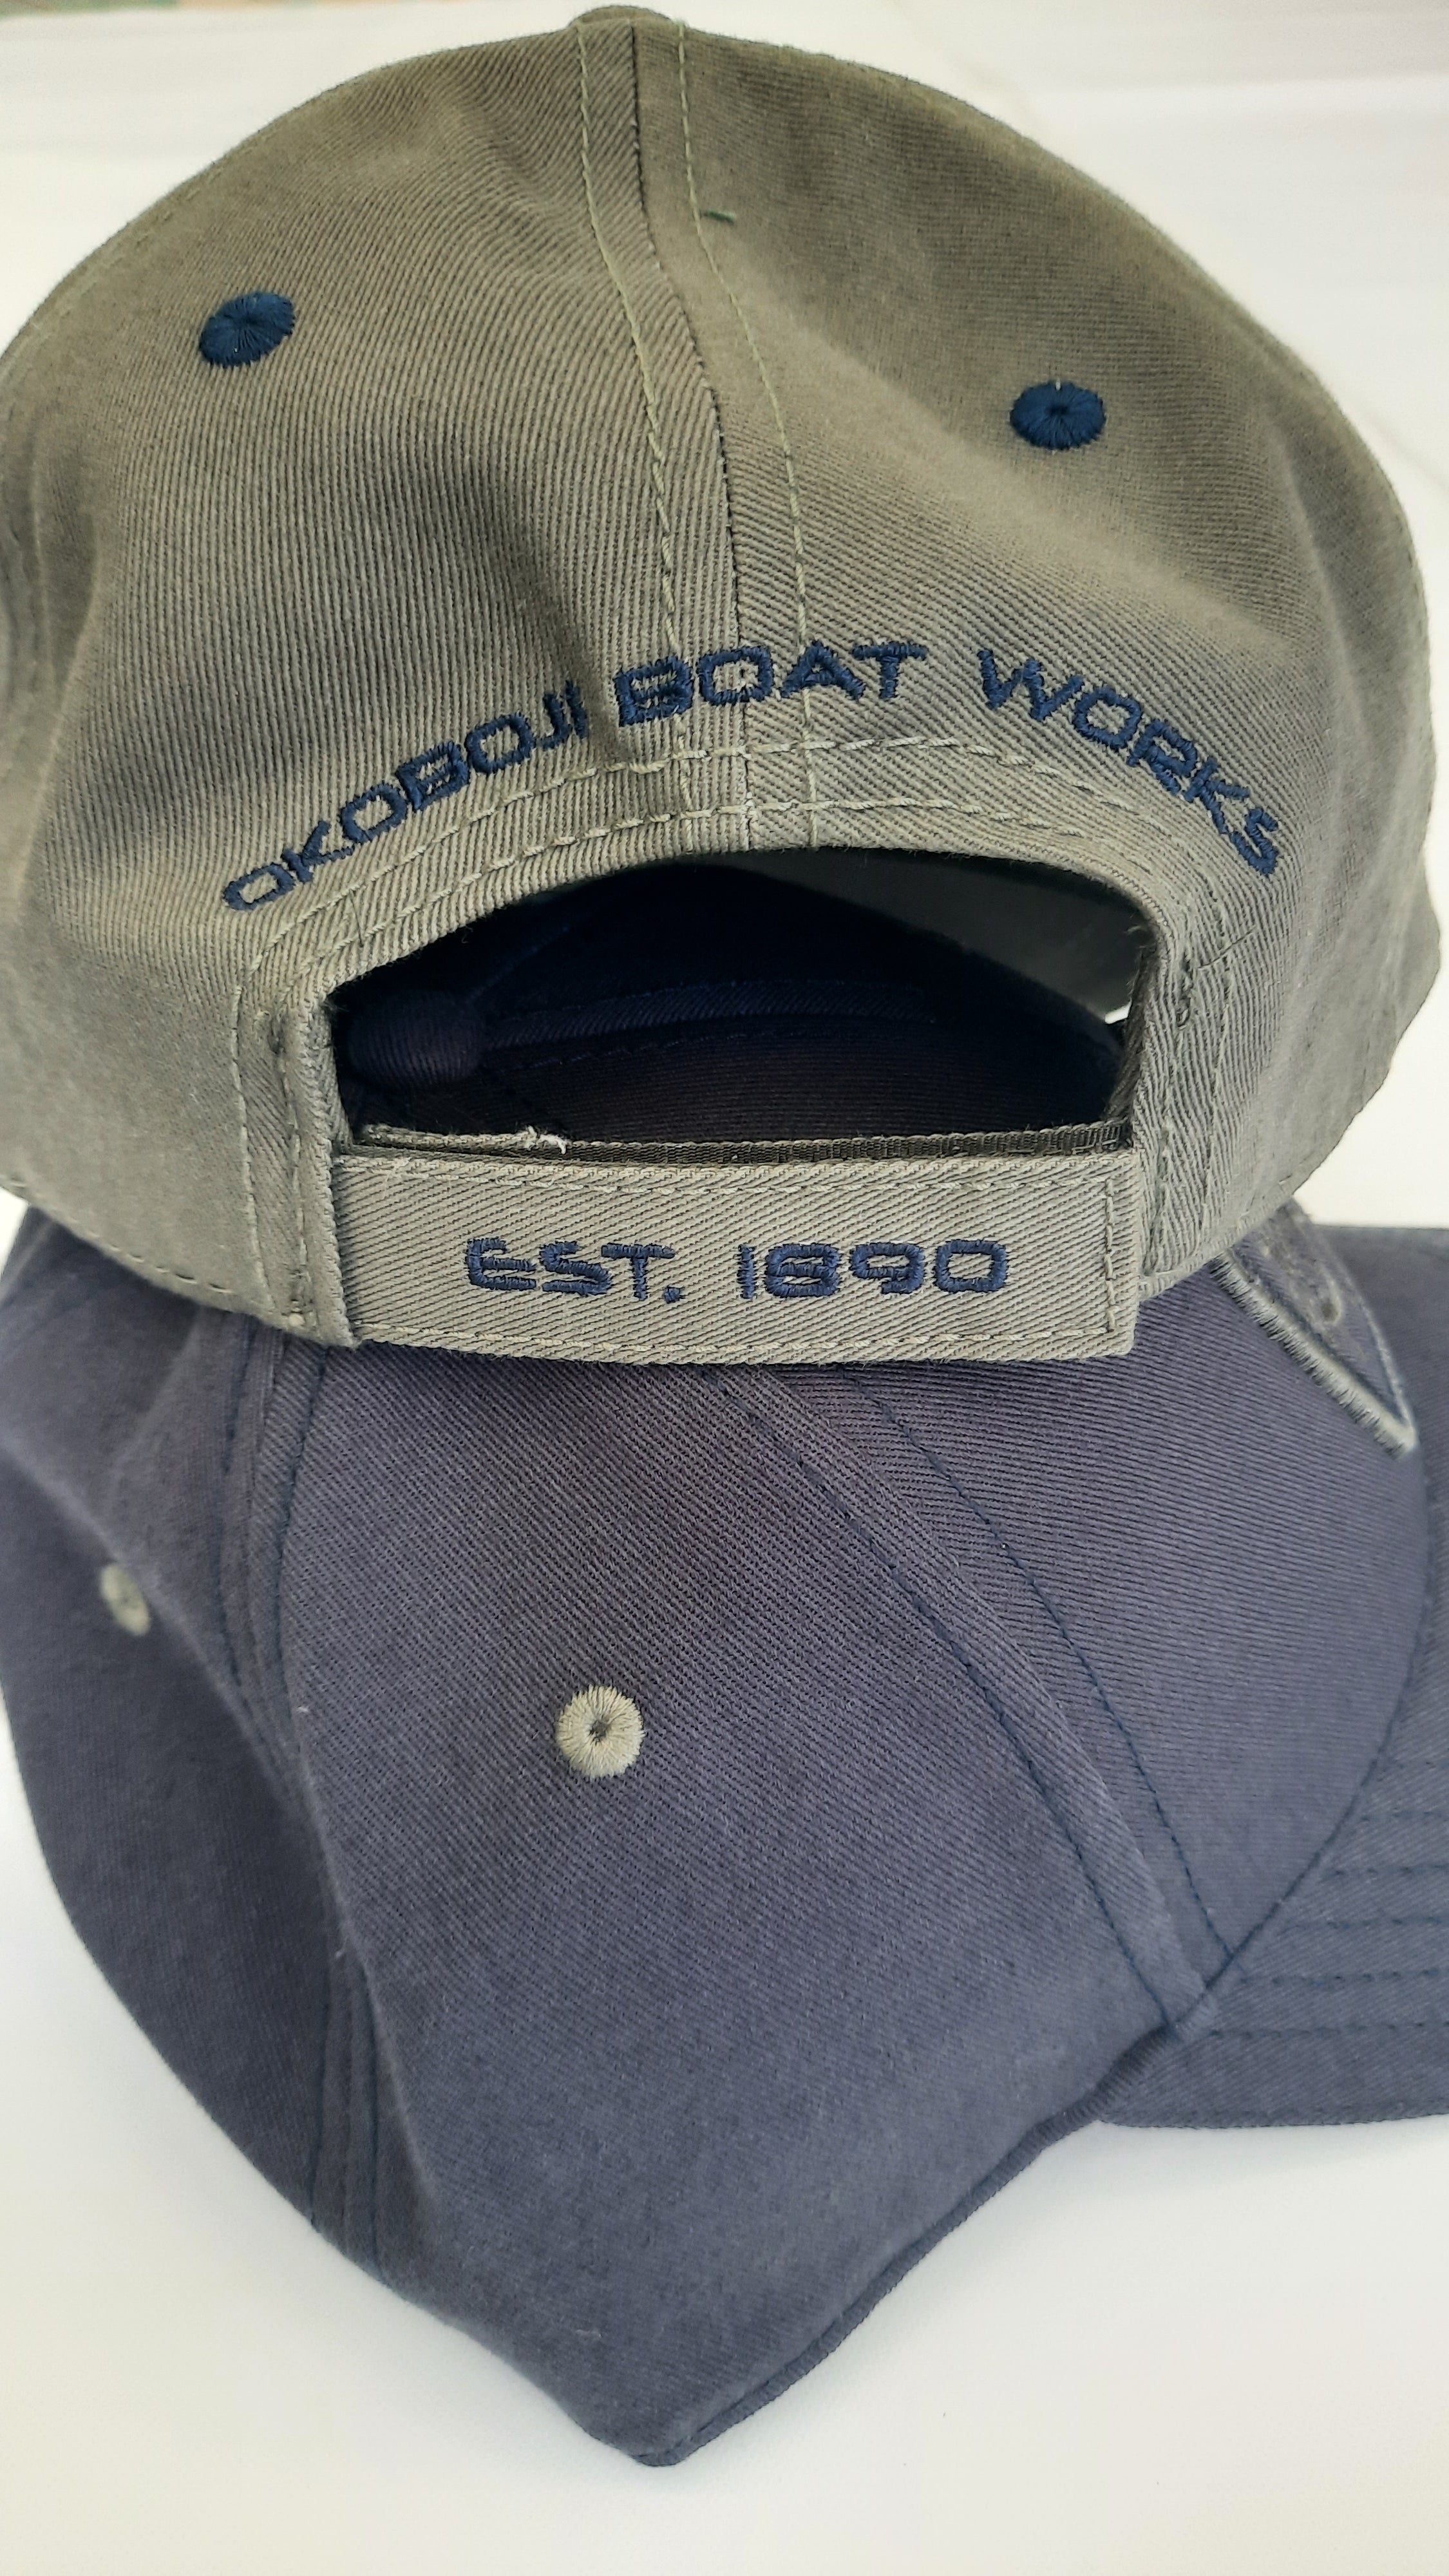 OBW EST 1890 BALL CAP